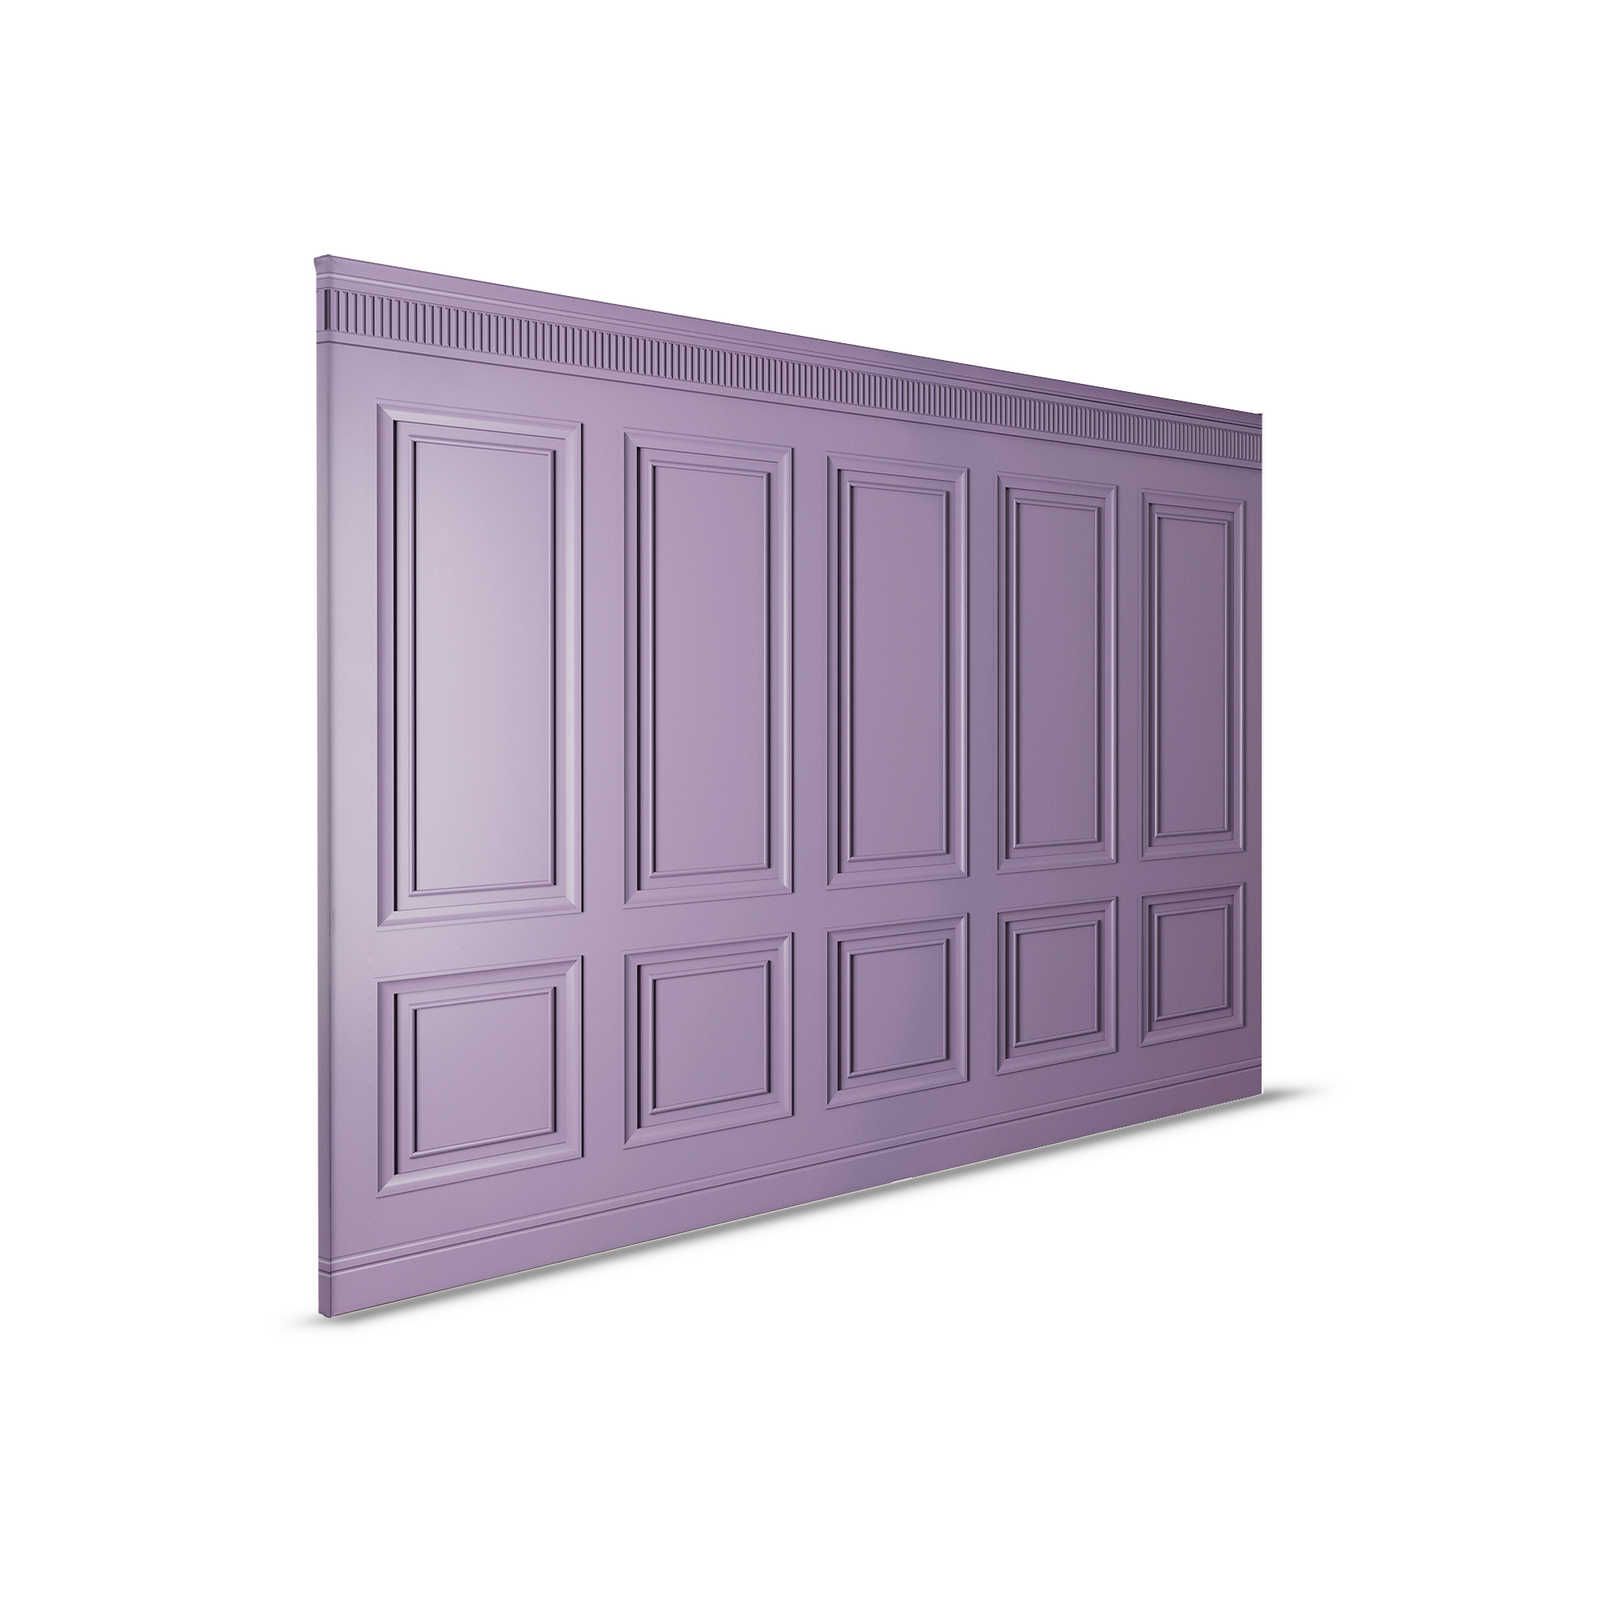         Kensington 3 - 3D Canvas painting wood paneling dark purple, violet - 0.90 m x 0.60 m
    